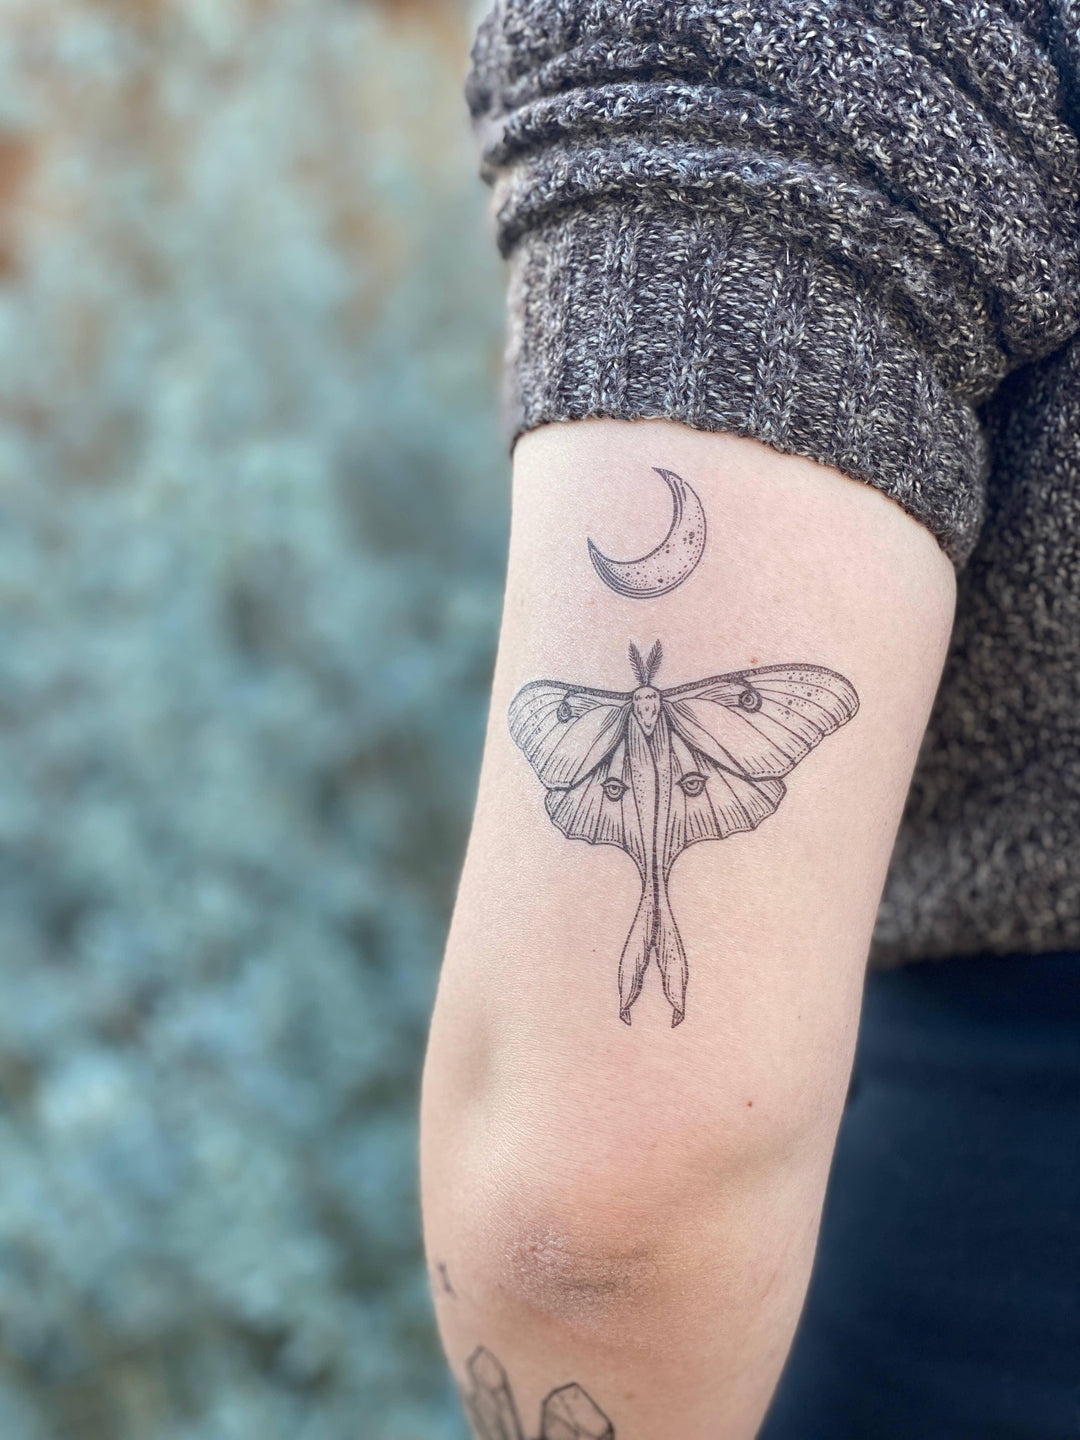 Luna Moth Temporary Tattoo - Esme and Elodie